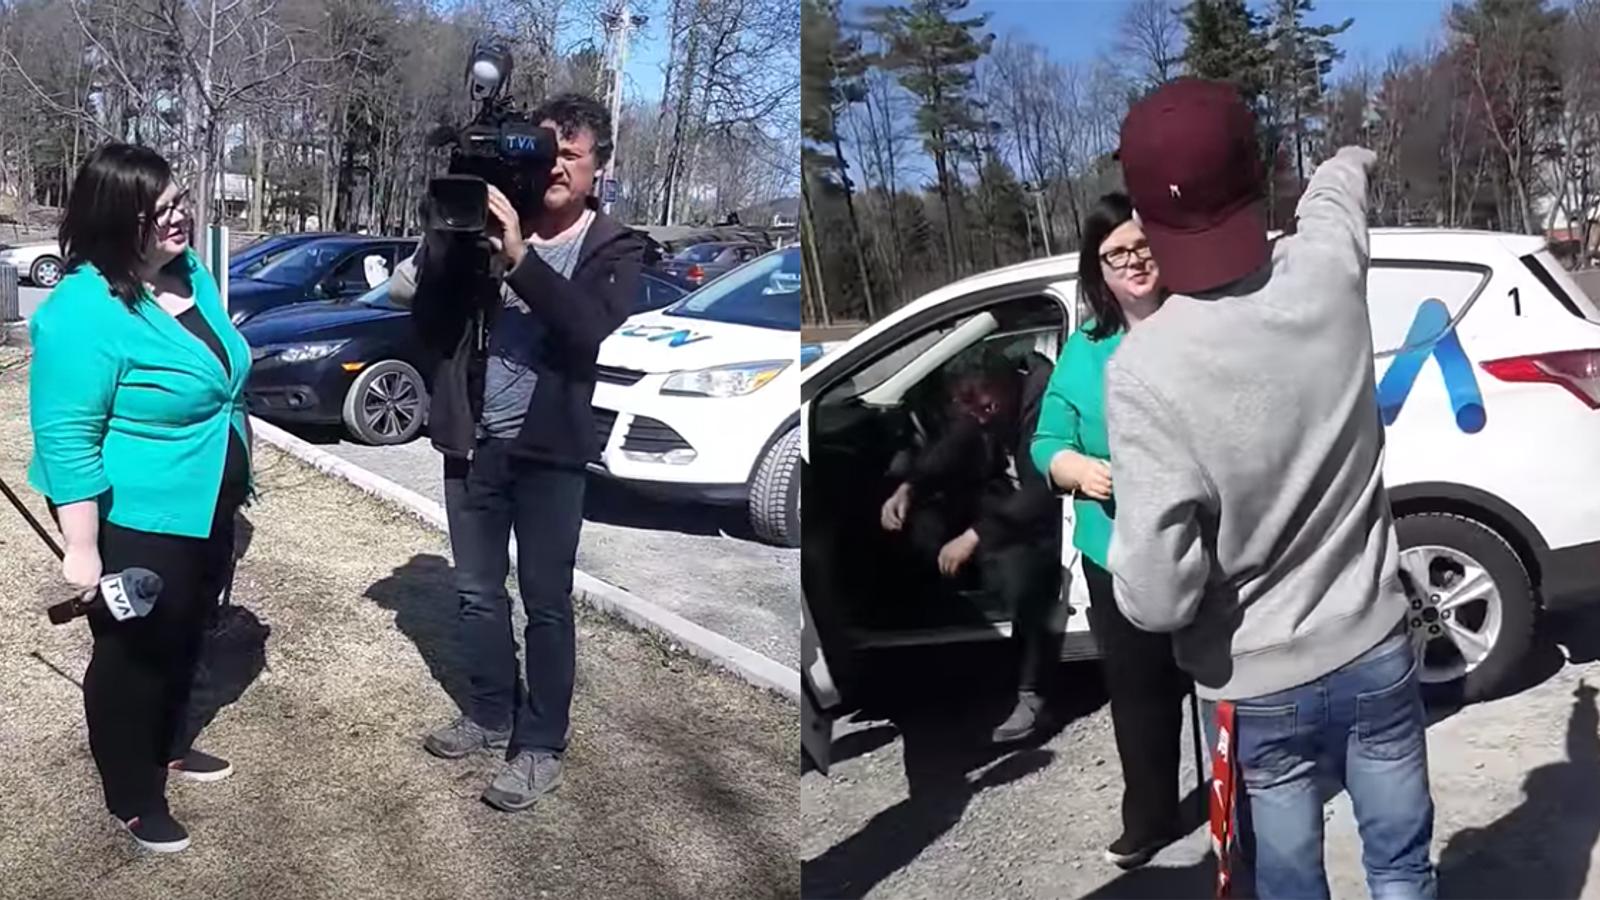 Une confrontation entre une journaliste de TVA et des jeunes dans un parc devient virale